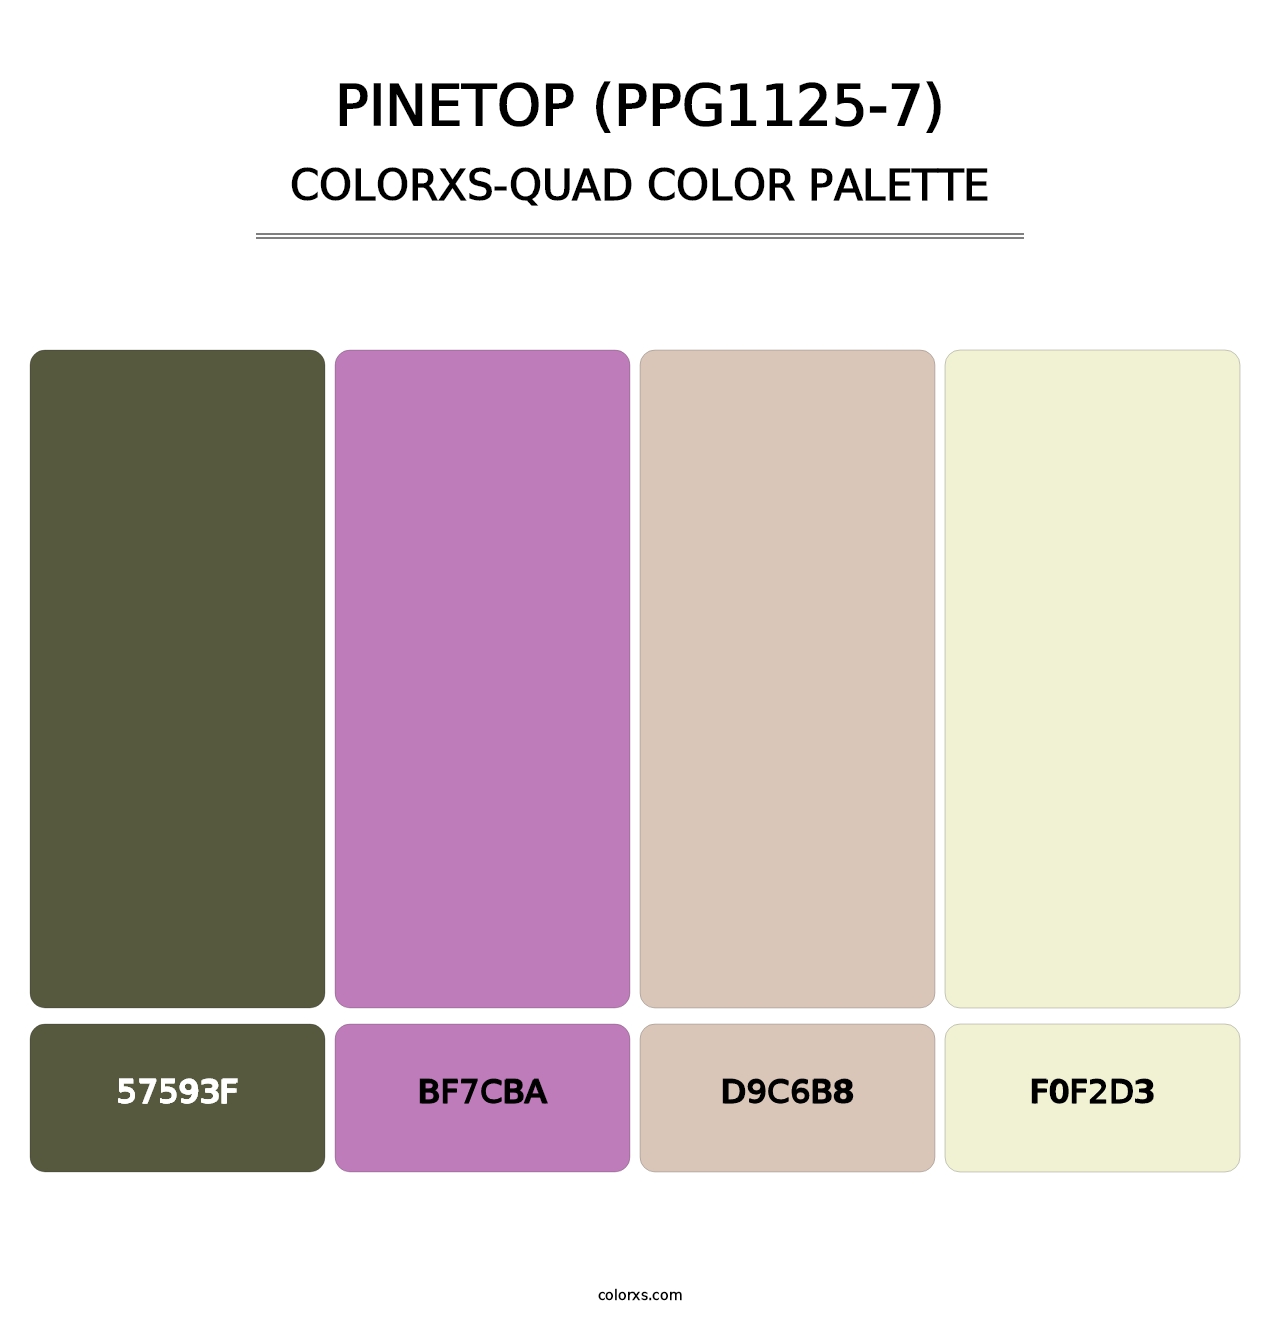 Pinetop (PPG1125-7) - Colorxs Quad Palette